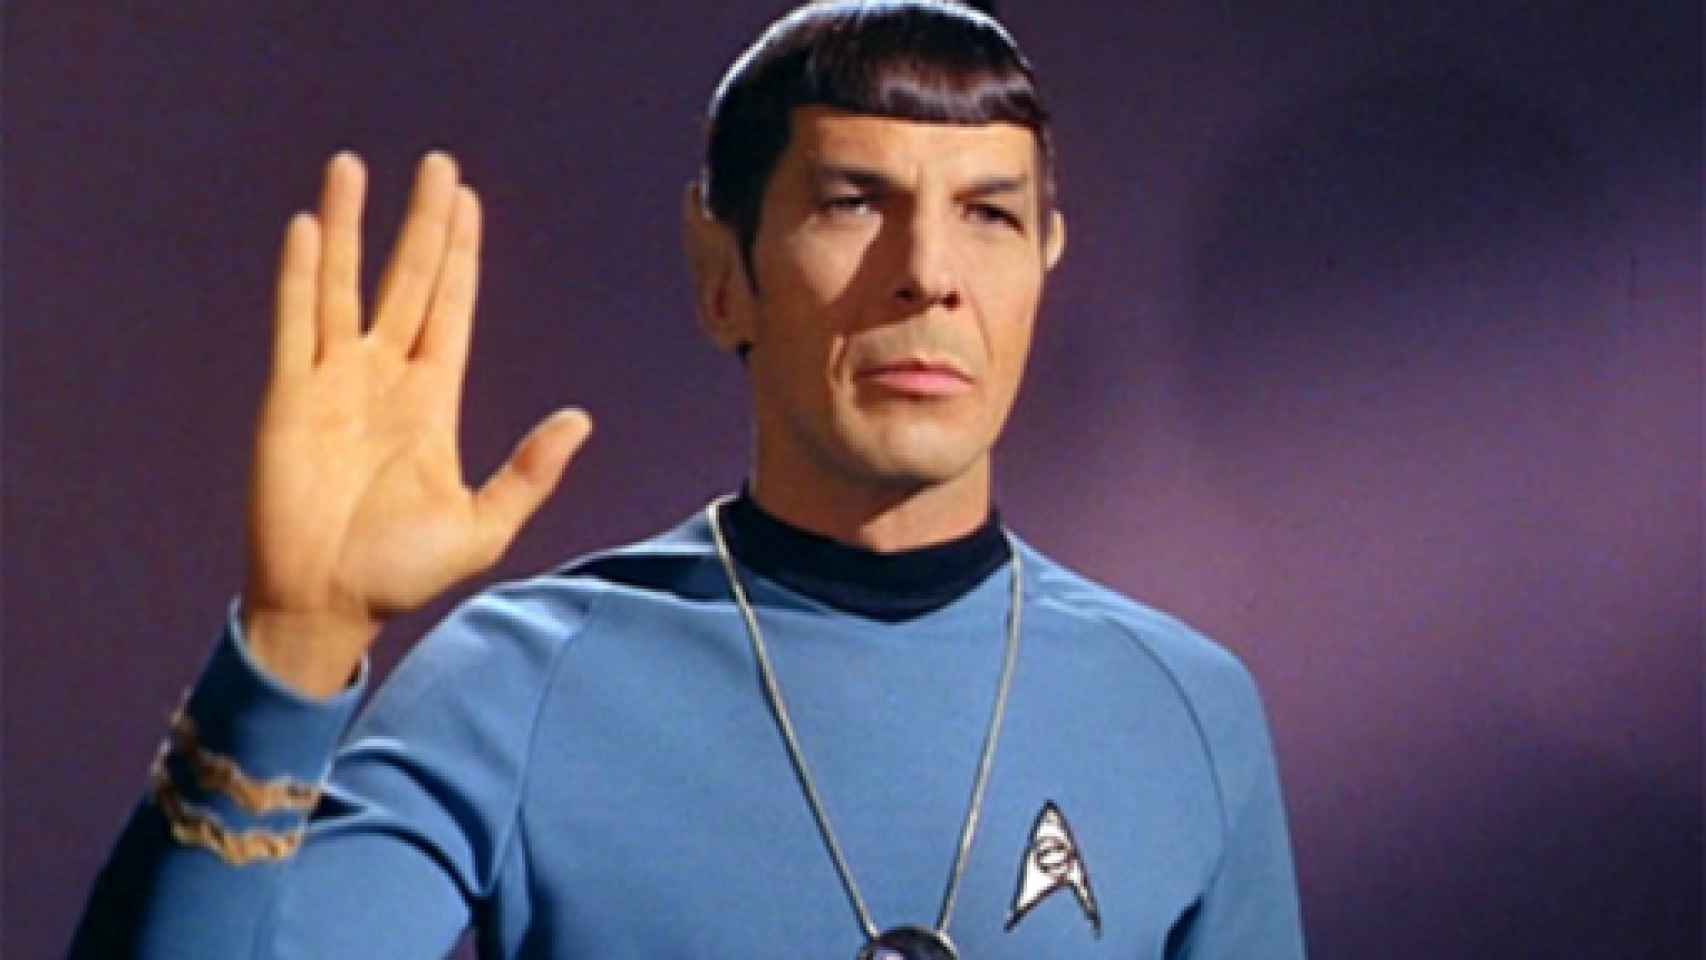 Image: Muere Leonard Nimoy, Mr. Spock en Star Trek